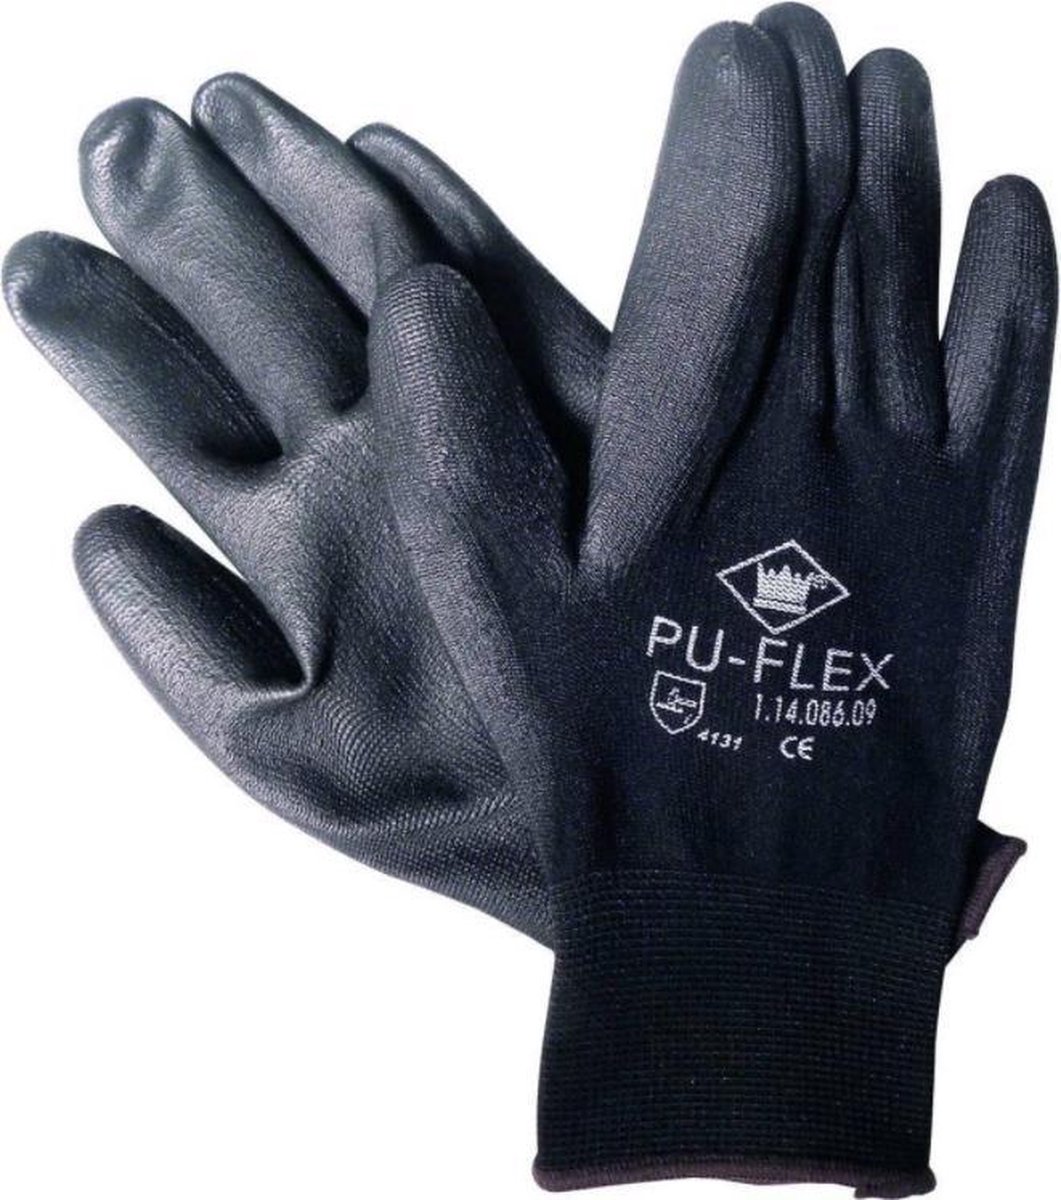 PU-Flex handschoen - zwart - maat M (8) - M-Safe - (set a 12 paar)